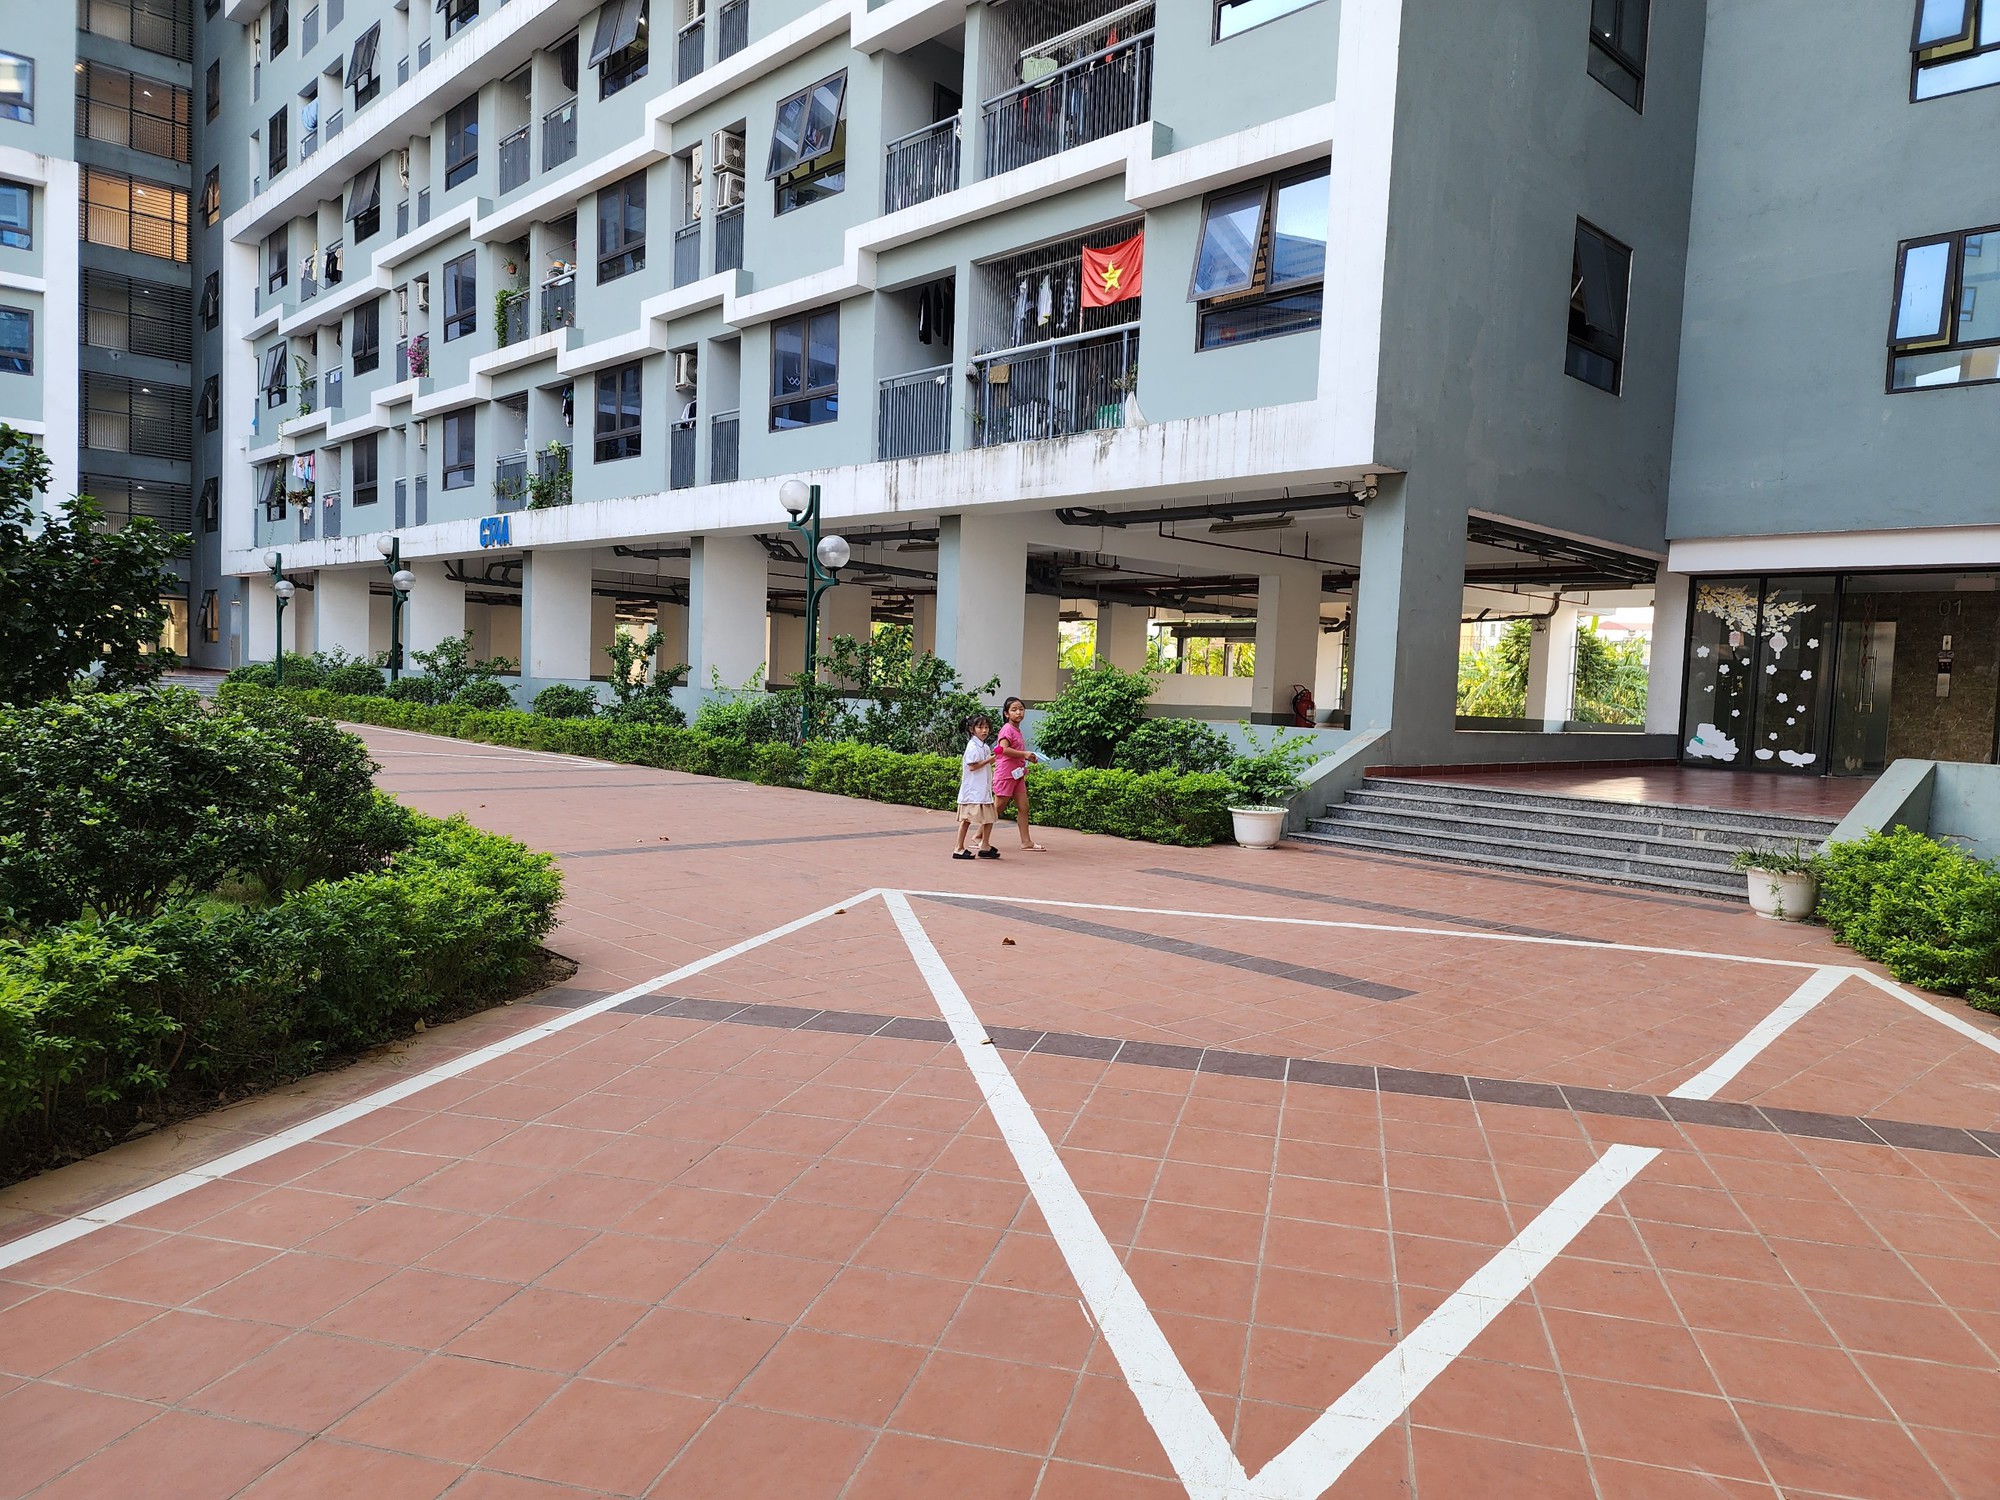 Cận cảnh nhà ở xã hội mang thiết kế Singapore - Ảnh 6.